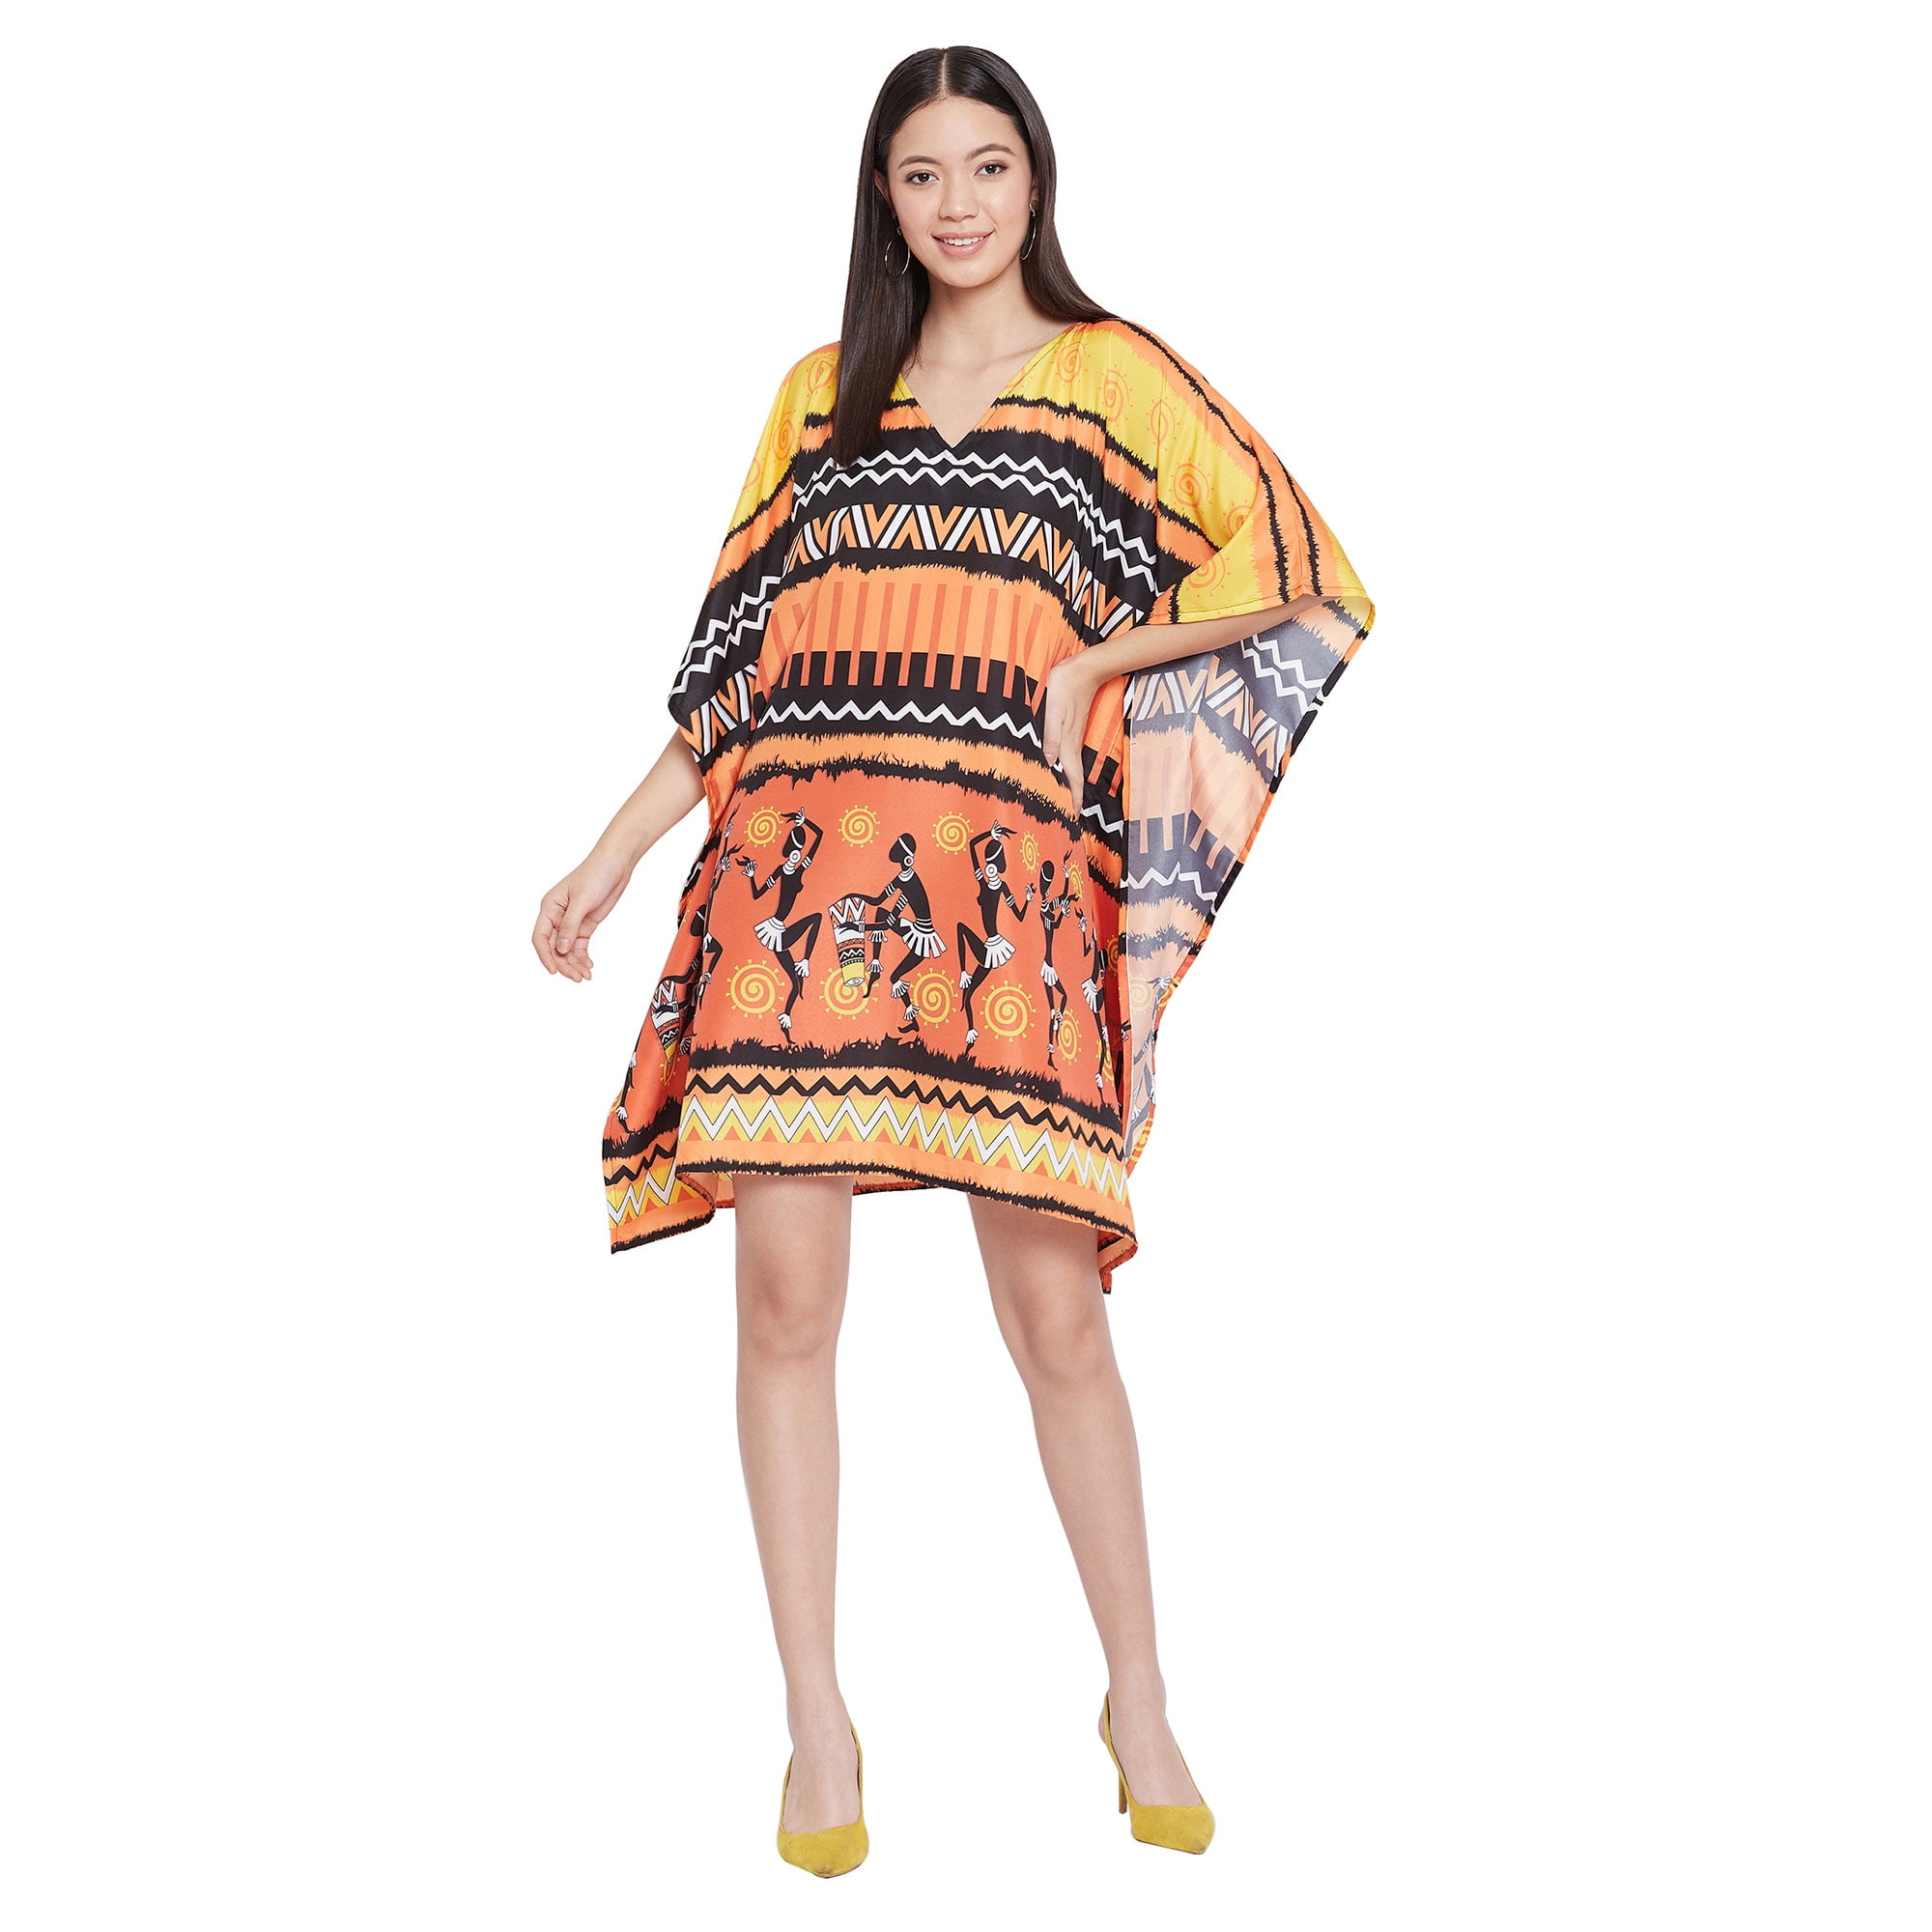 Designer dresses - Buy ethnic dresses online for women | The right cut |  Stylish dresses for girls, Buy dress, Stylish dresses